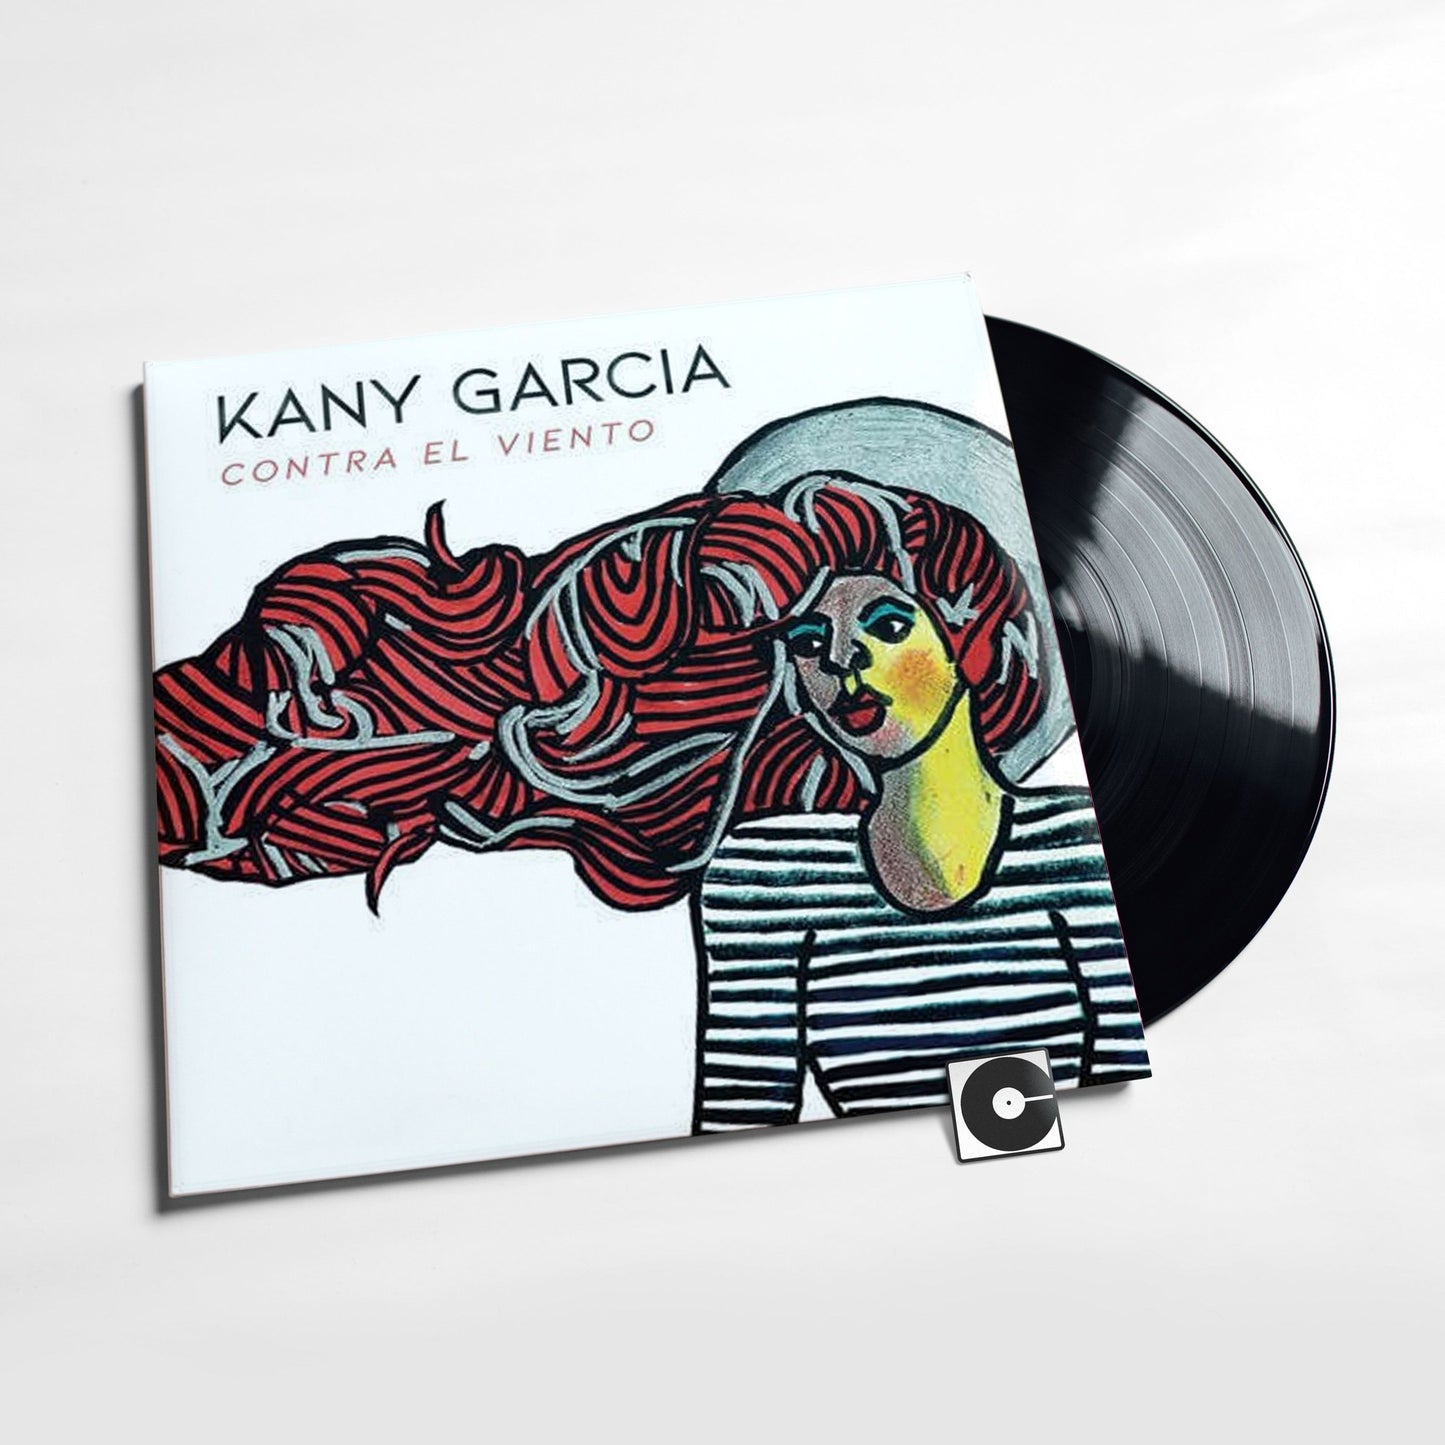 Kany Garcia - "Contra El Viento"